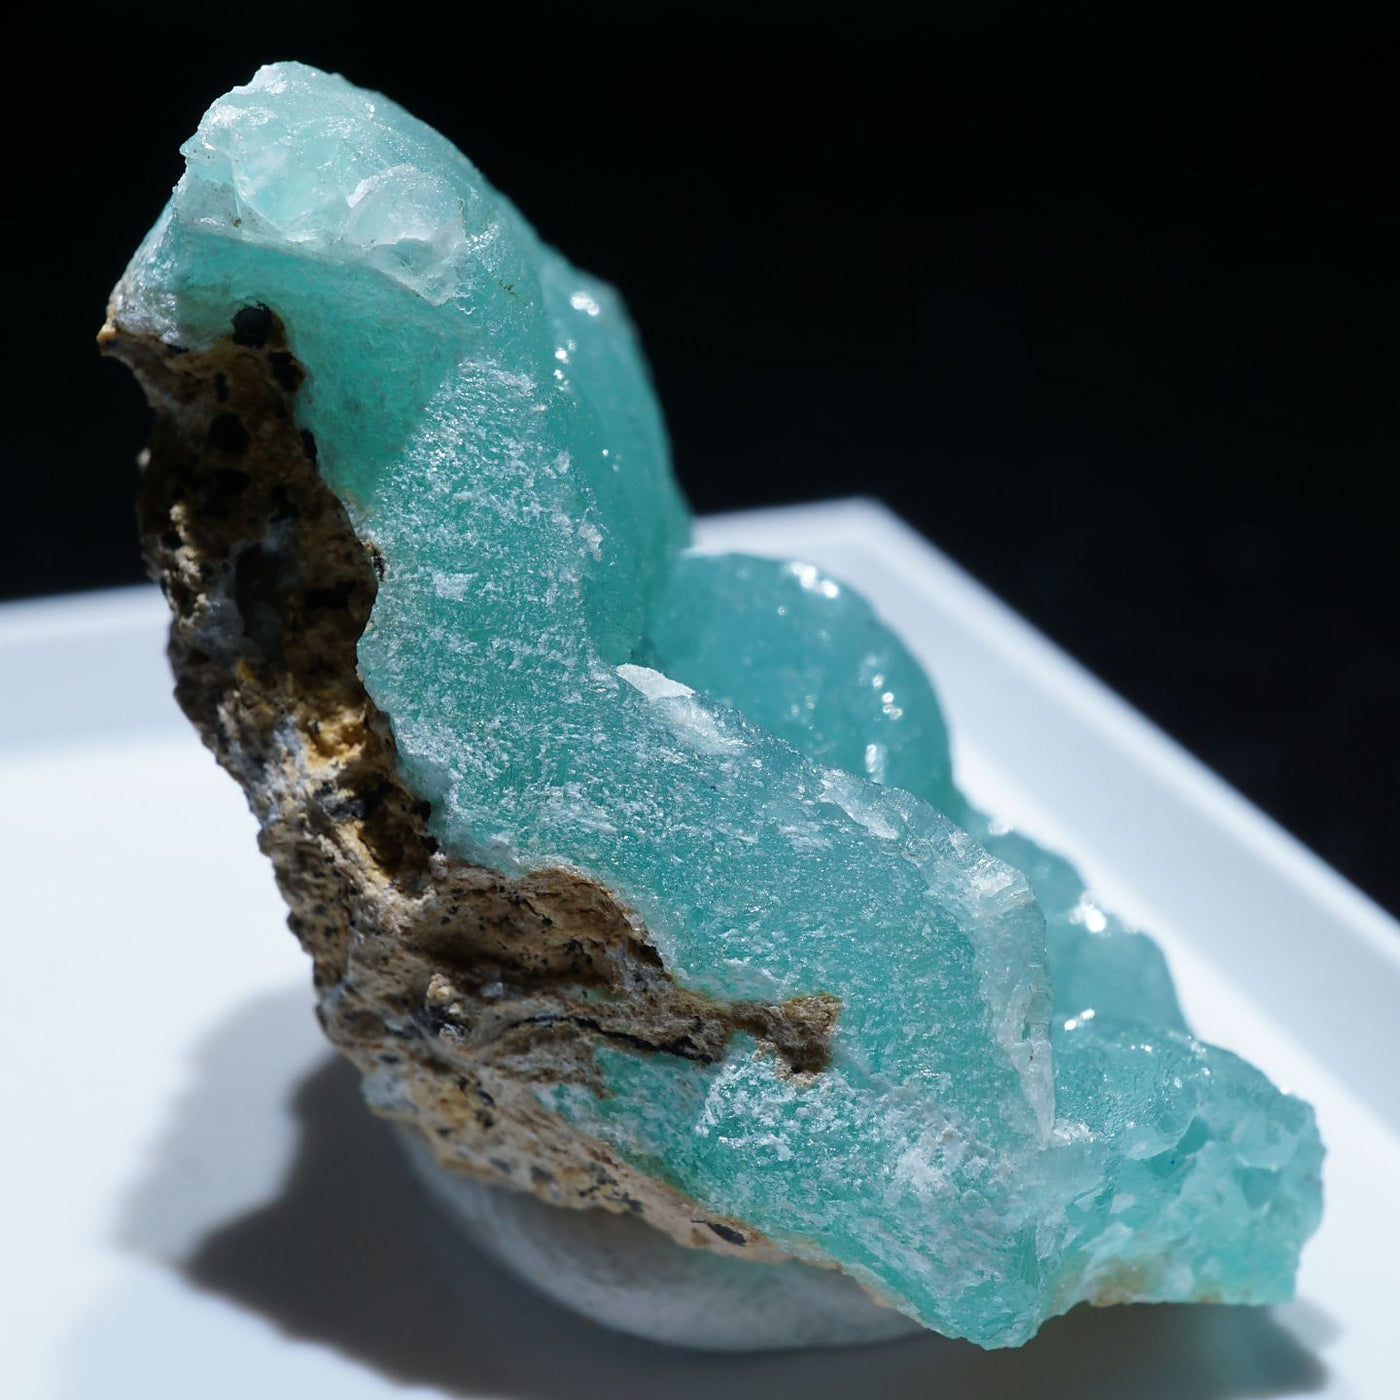 コンゴ産 スミソナイト(菱亜鉛鉱) – 天然石ハッピーギフト